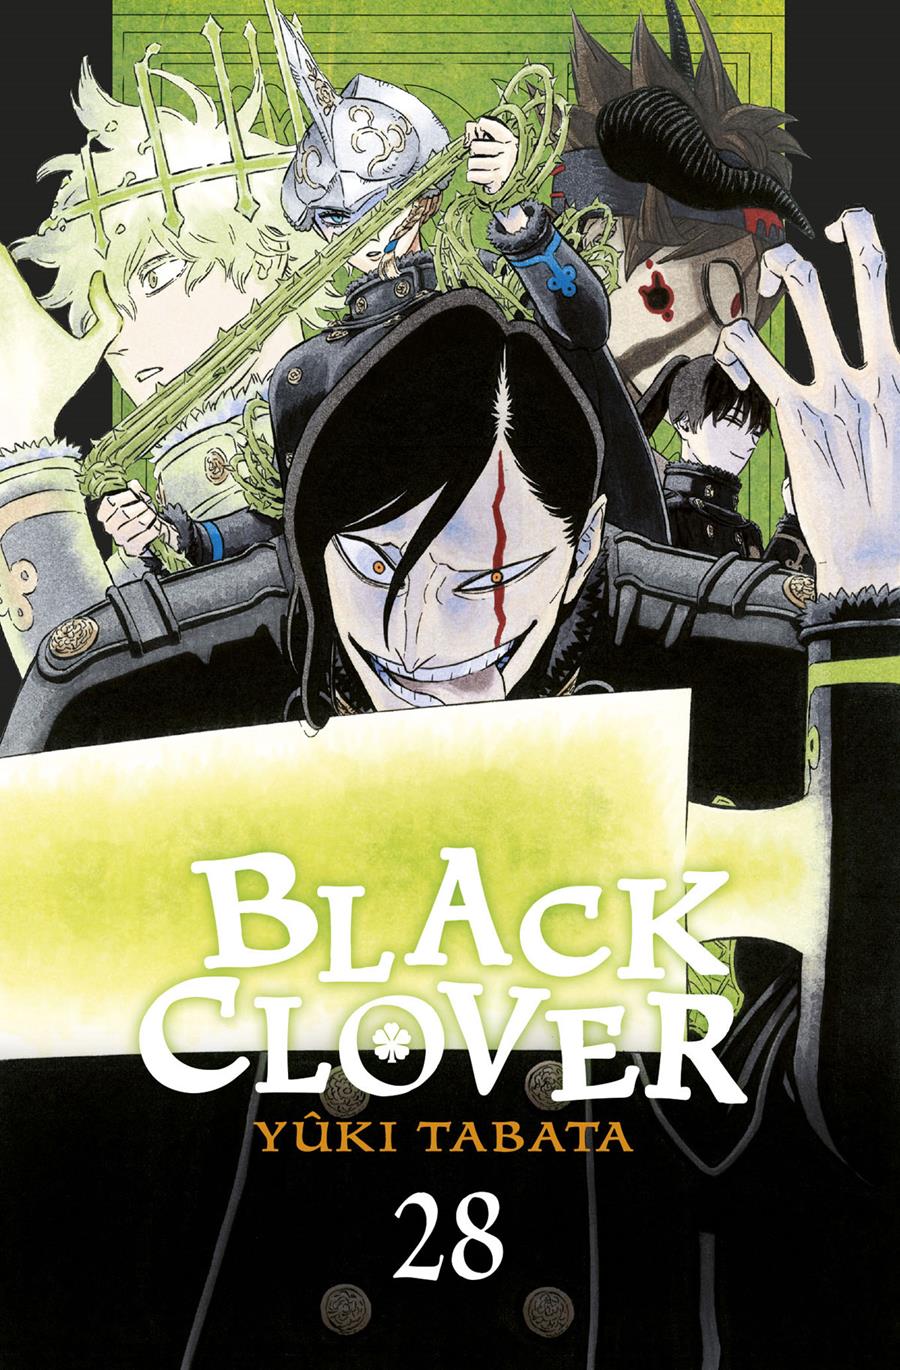 Black clover 28 | N0822-NOR06 | Yûki Tabata | Terra de Còmic - Tu tienda de cómics online especializada en cómics, manga y merchandising